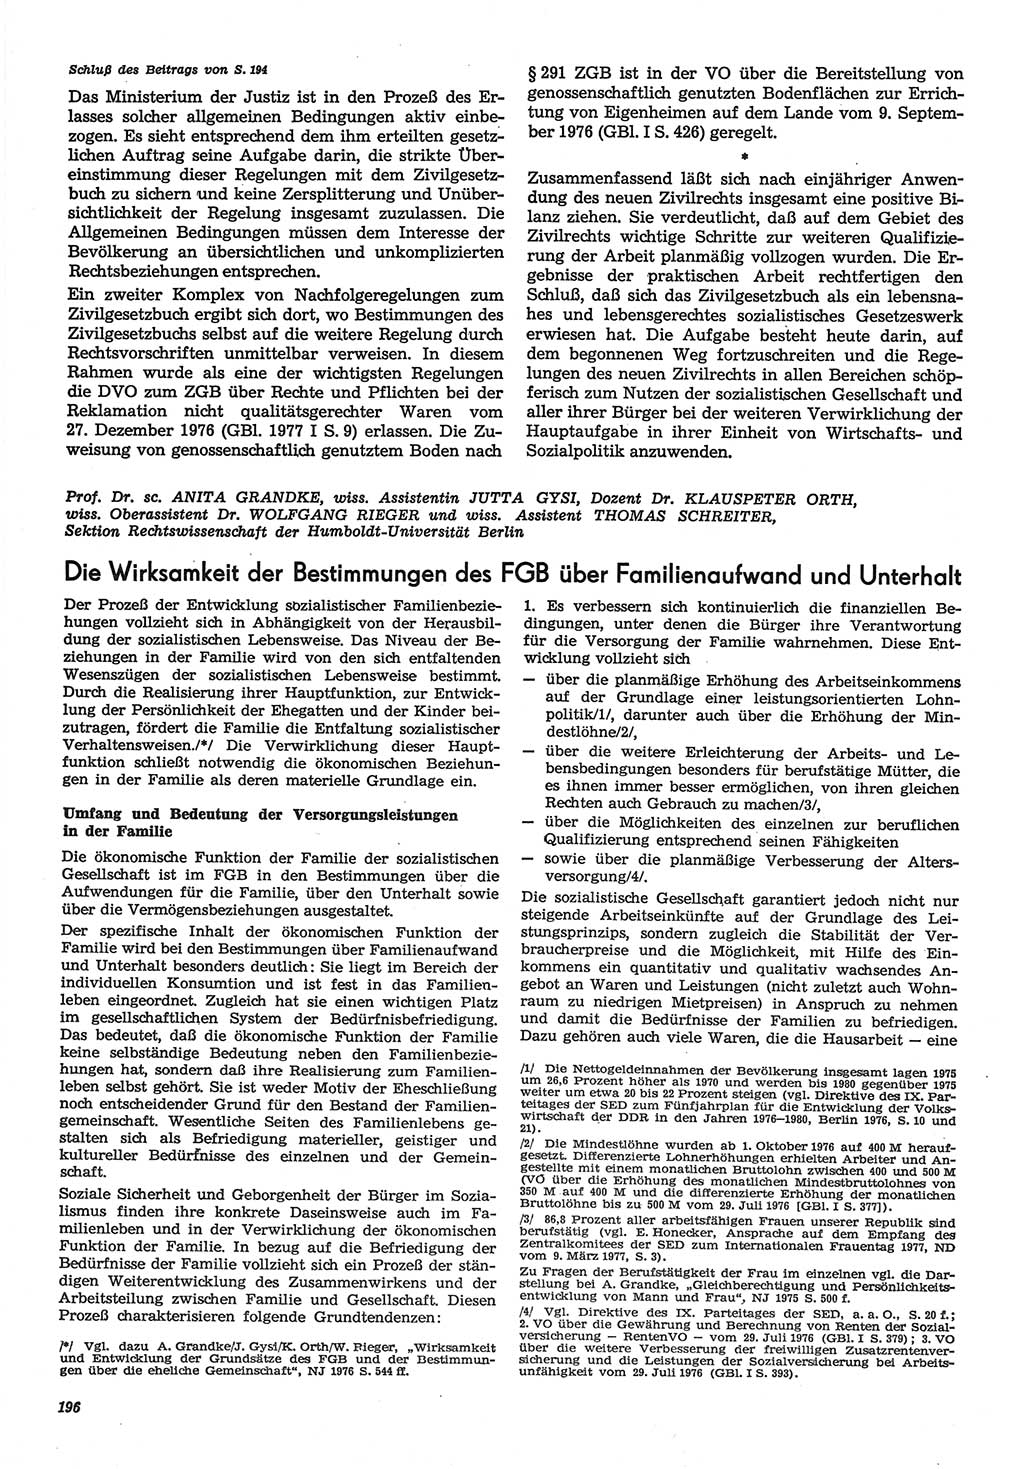 Neue Justiz (NJ), Zeitschrift für Recht und Rechtswissenschaft-Zeitschrift, sozialistisches Recht und Gesetzlichkeit, 31. Jahrgang 1977, Seite 196 (NJ DDR 1977, S. 196)